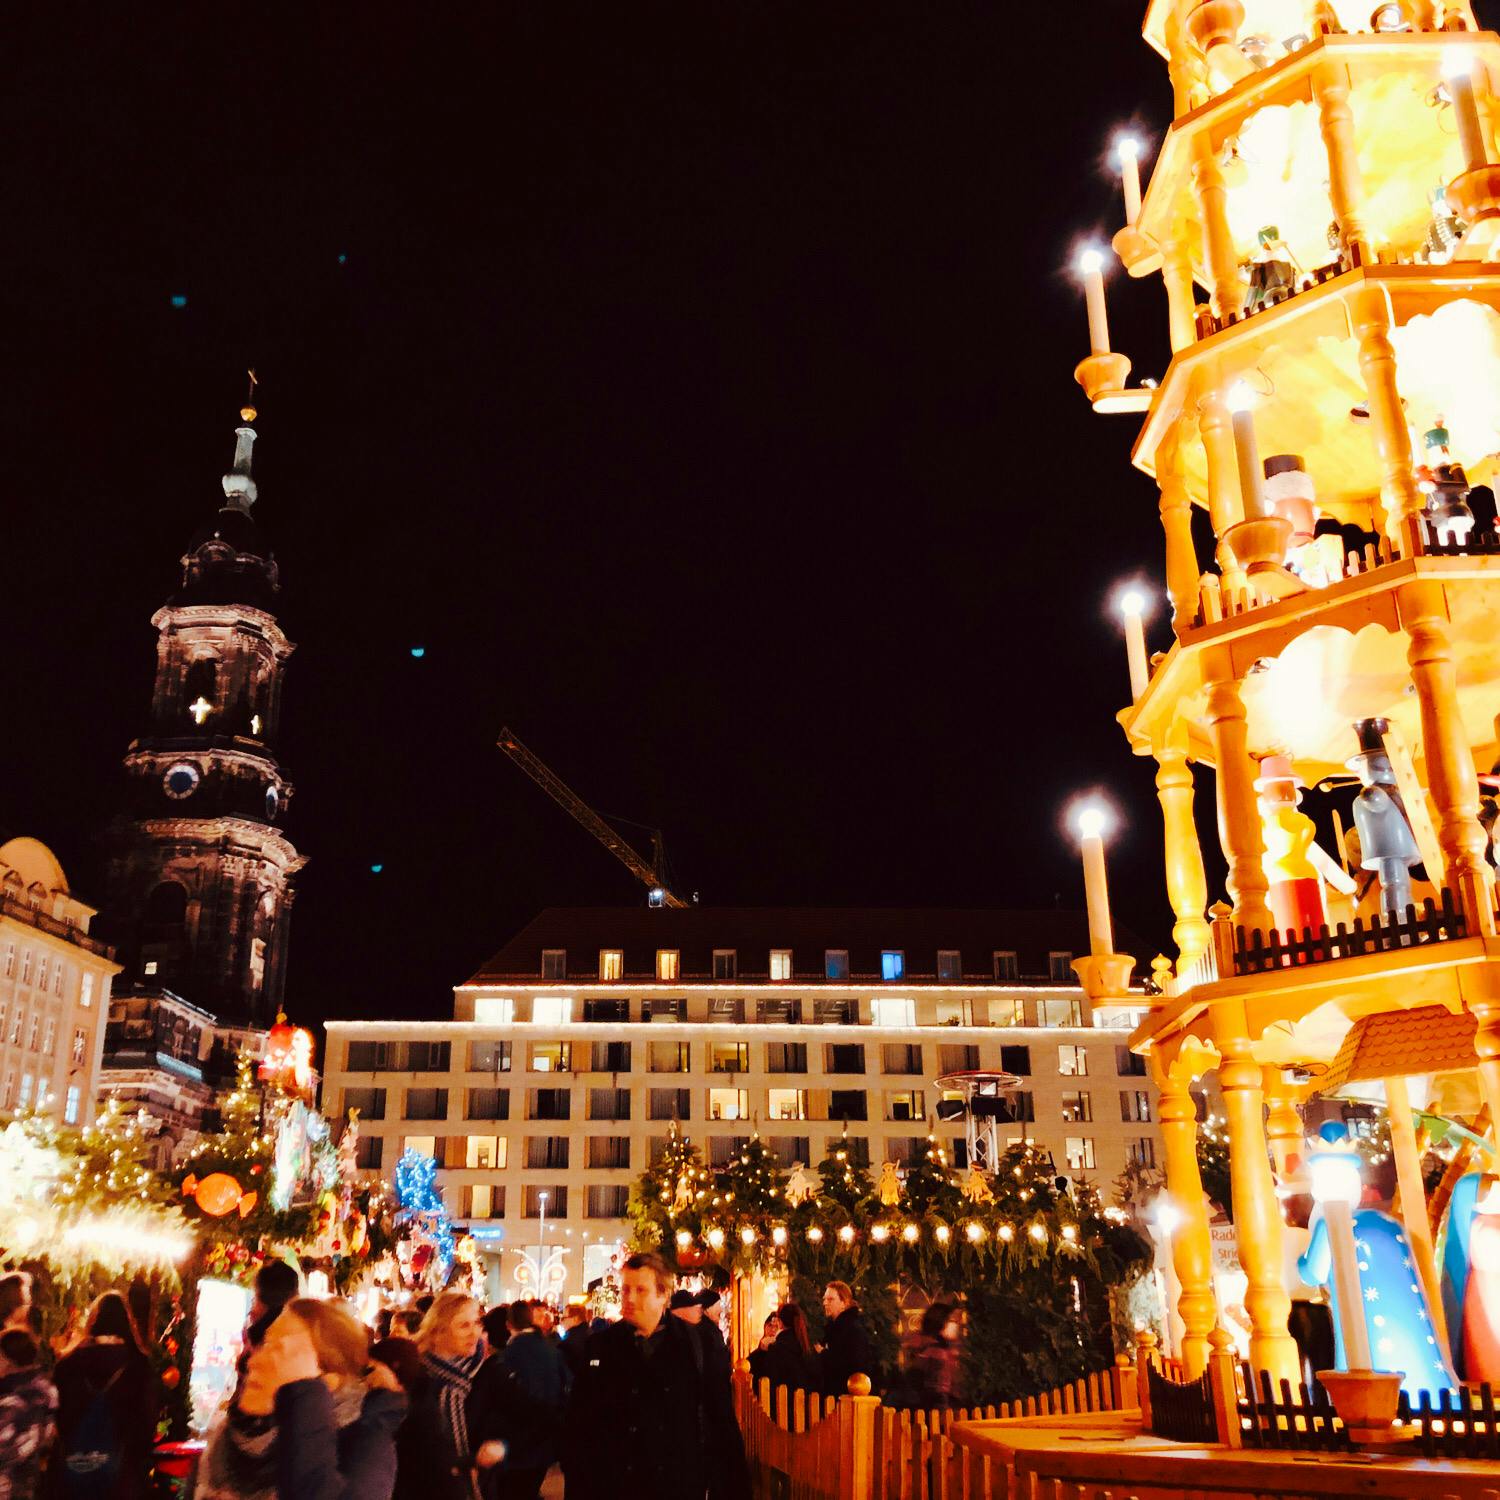 ドレスデンのクリスマスマーケット Dresden Christmas Markets の投稿写真 感想 みどころ 世界最古のクリスマスマーケット は ここドレスデンだったとか トリップノート